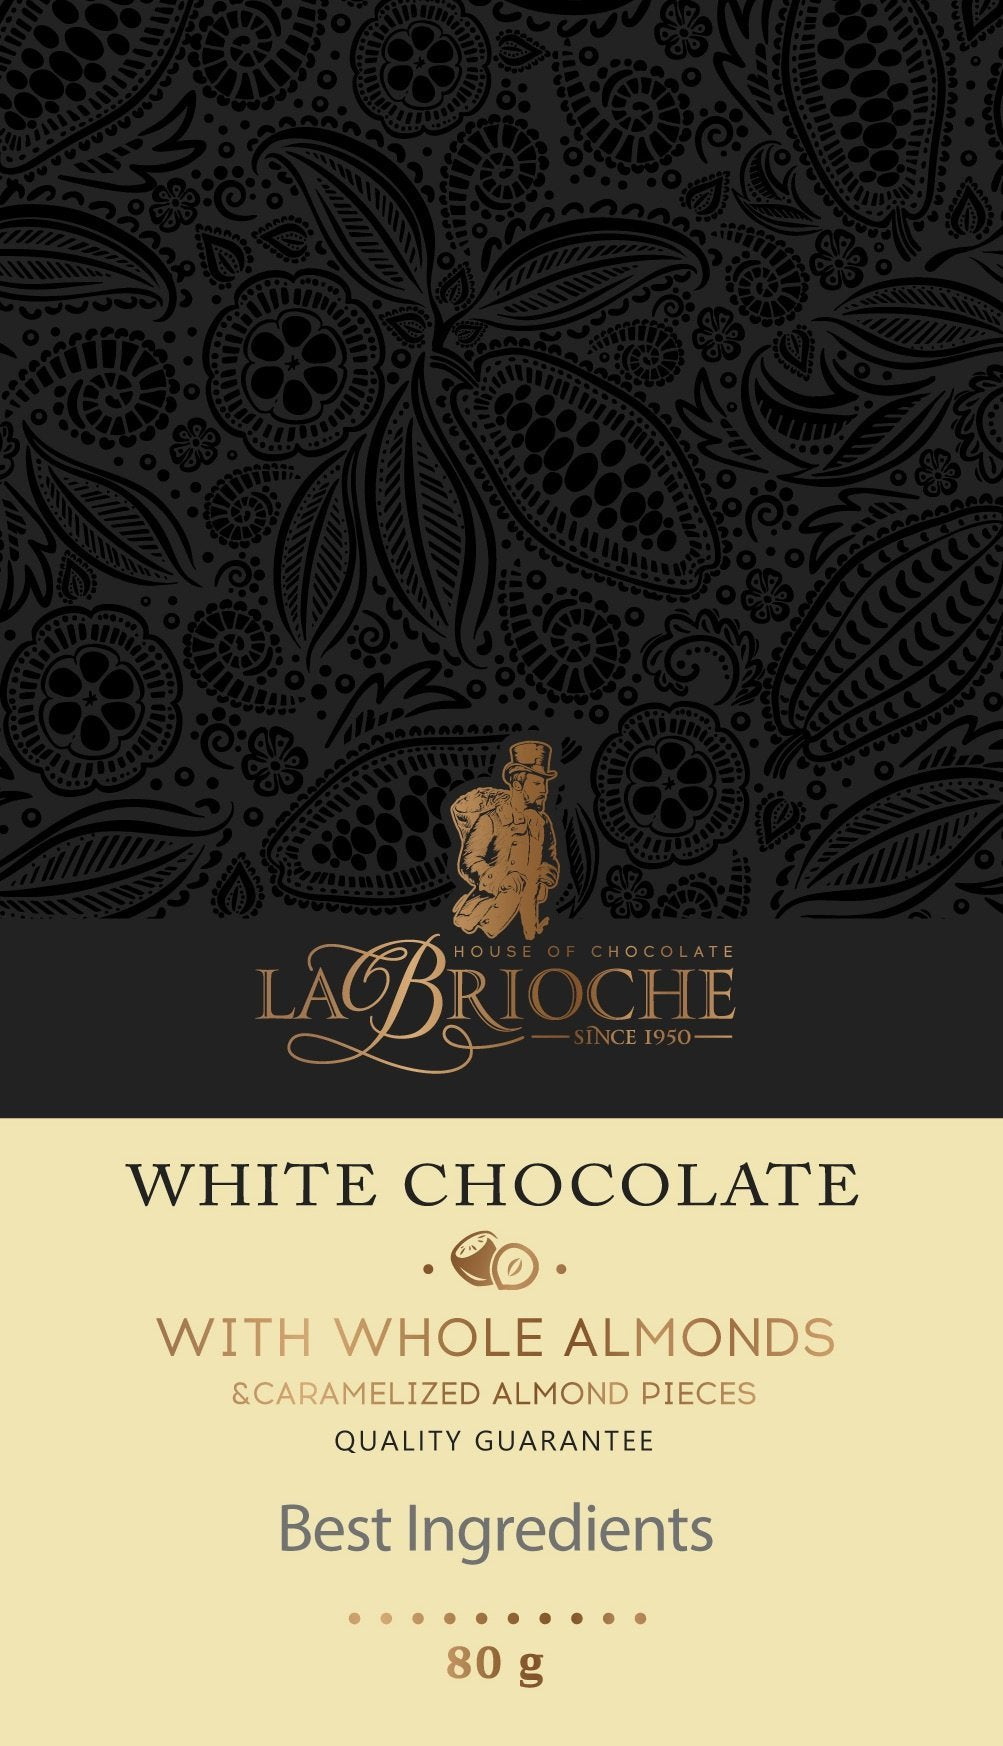 La Brioche White Chocolate With Almond - La Brioche